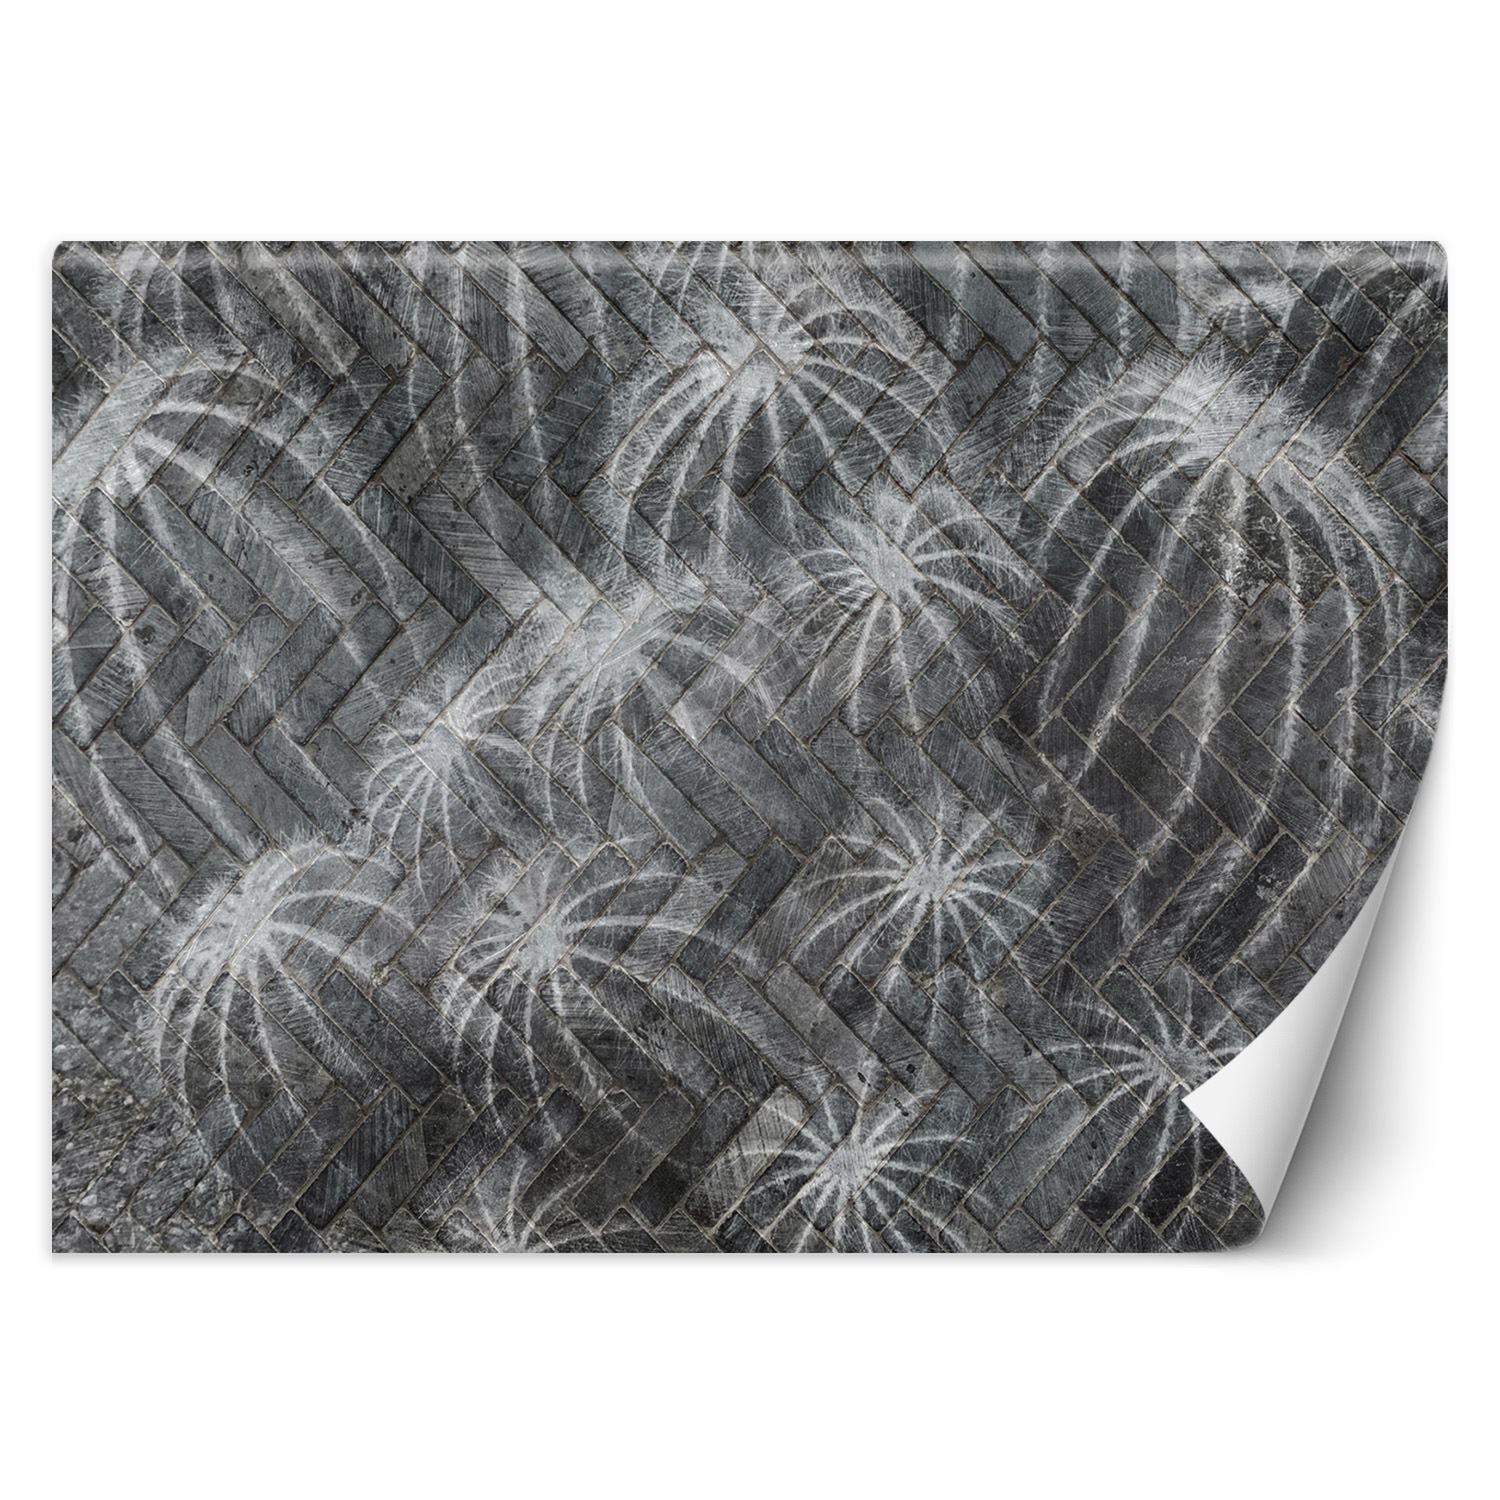 Trend24 – Behang – Cactussen In Grijs – Behangpapier – Behang Woonkamer – Fotobehang – 400x280x2 cm – Incl. behanglijm